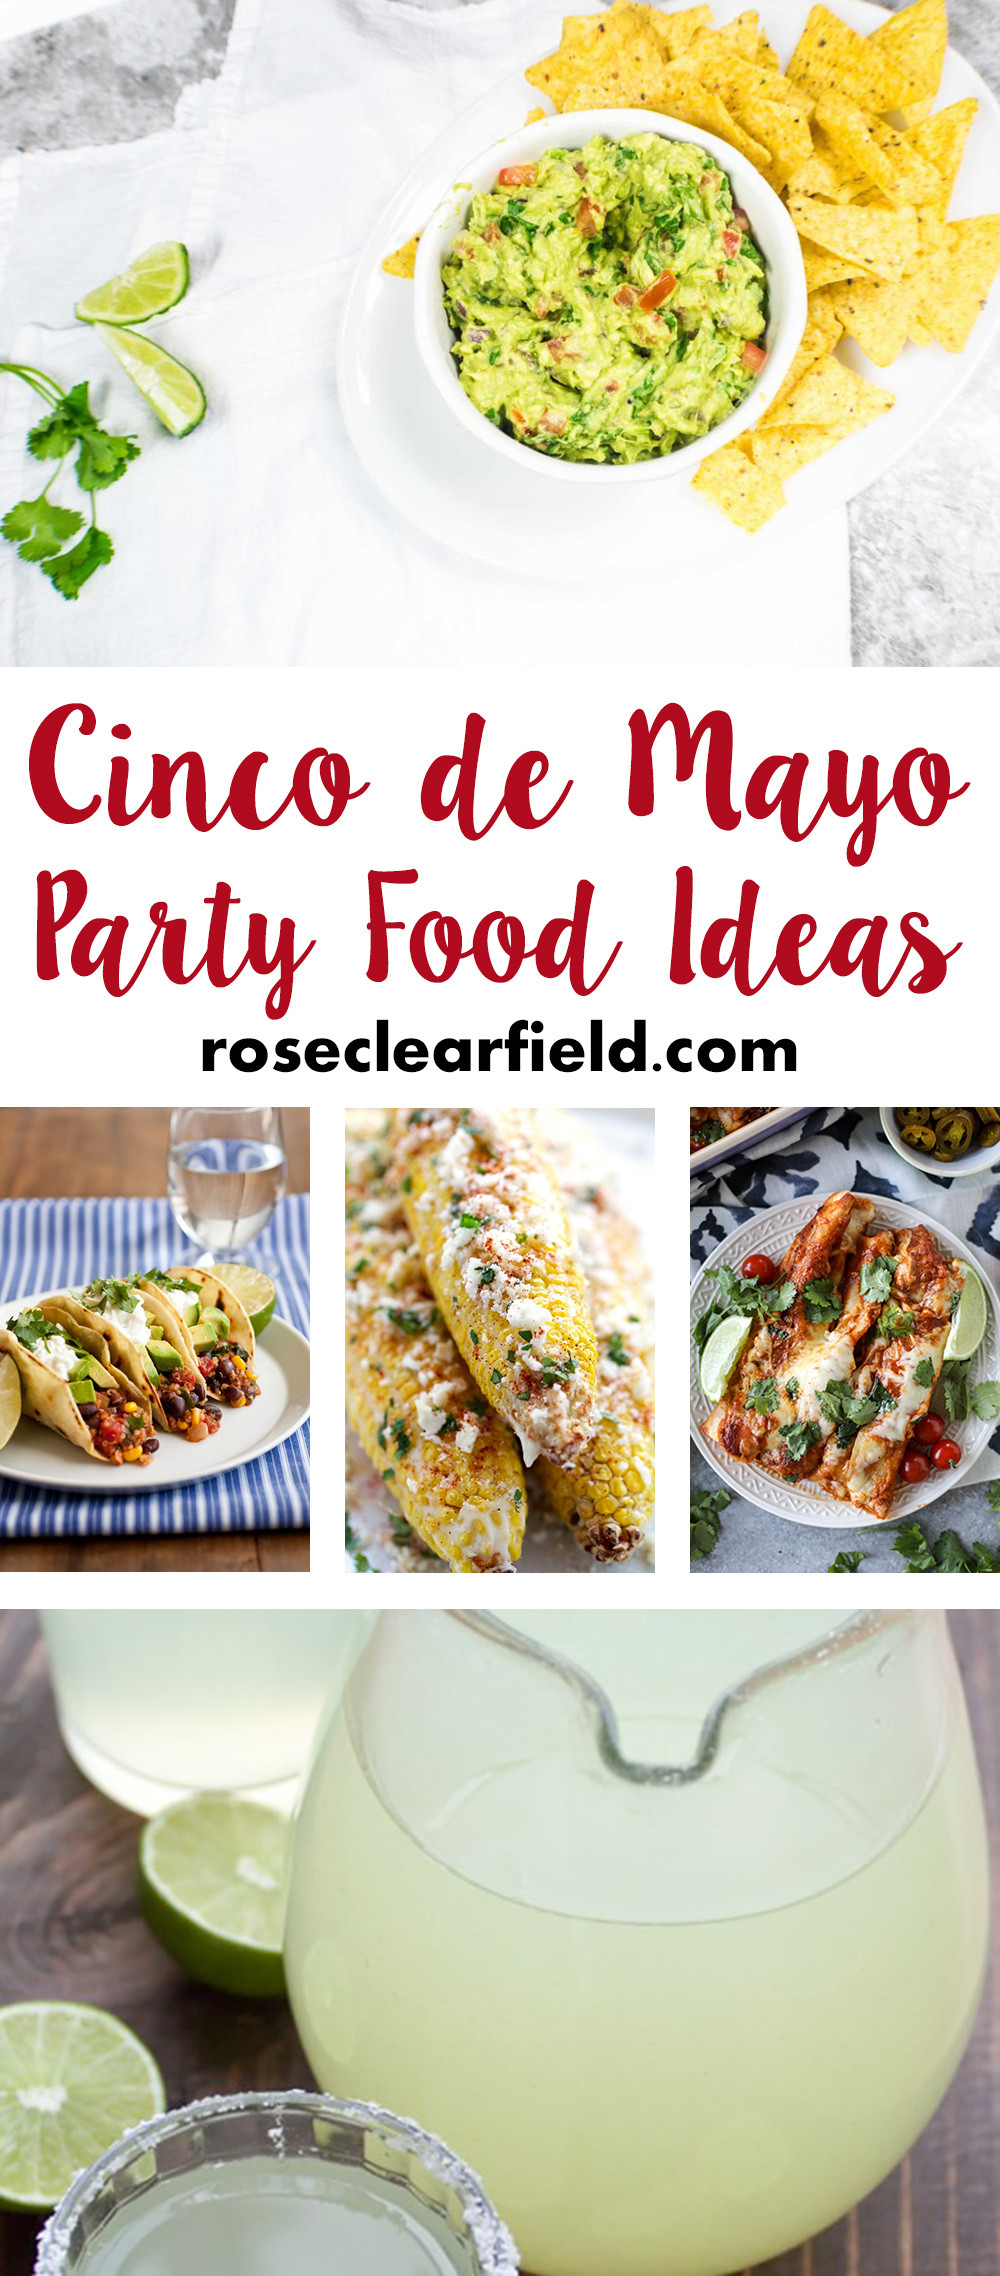 Cinco De Mayo Food Ideas
 Cinco de Mayo Party Food Ideas • Rose Clearfield